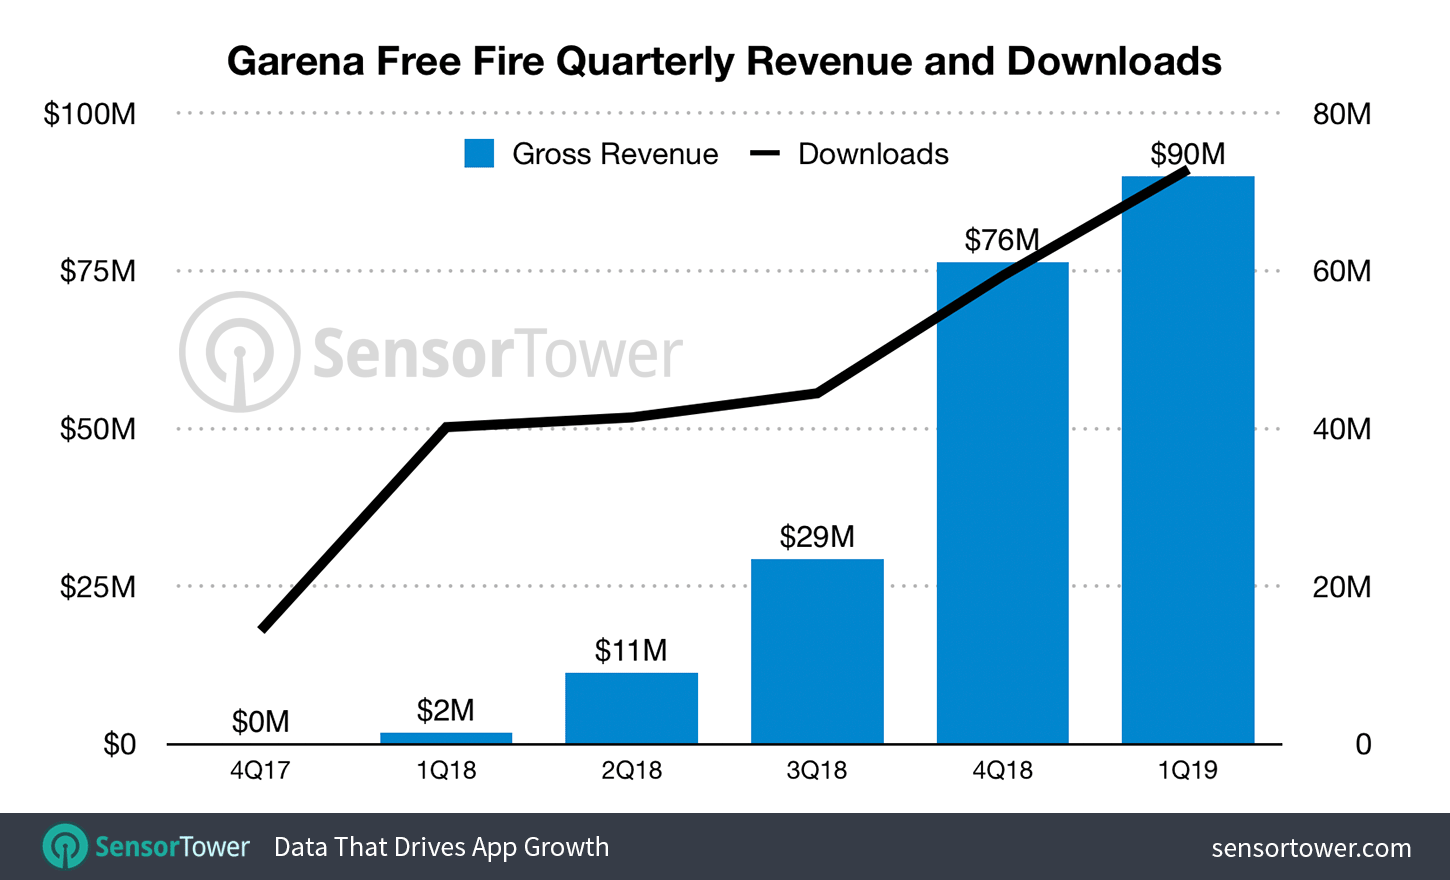 Garena Free Fire Quarterly Revenue and Downloads